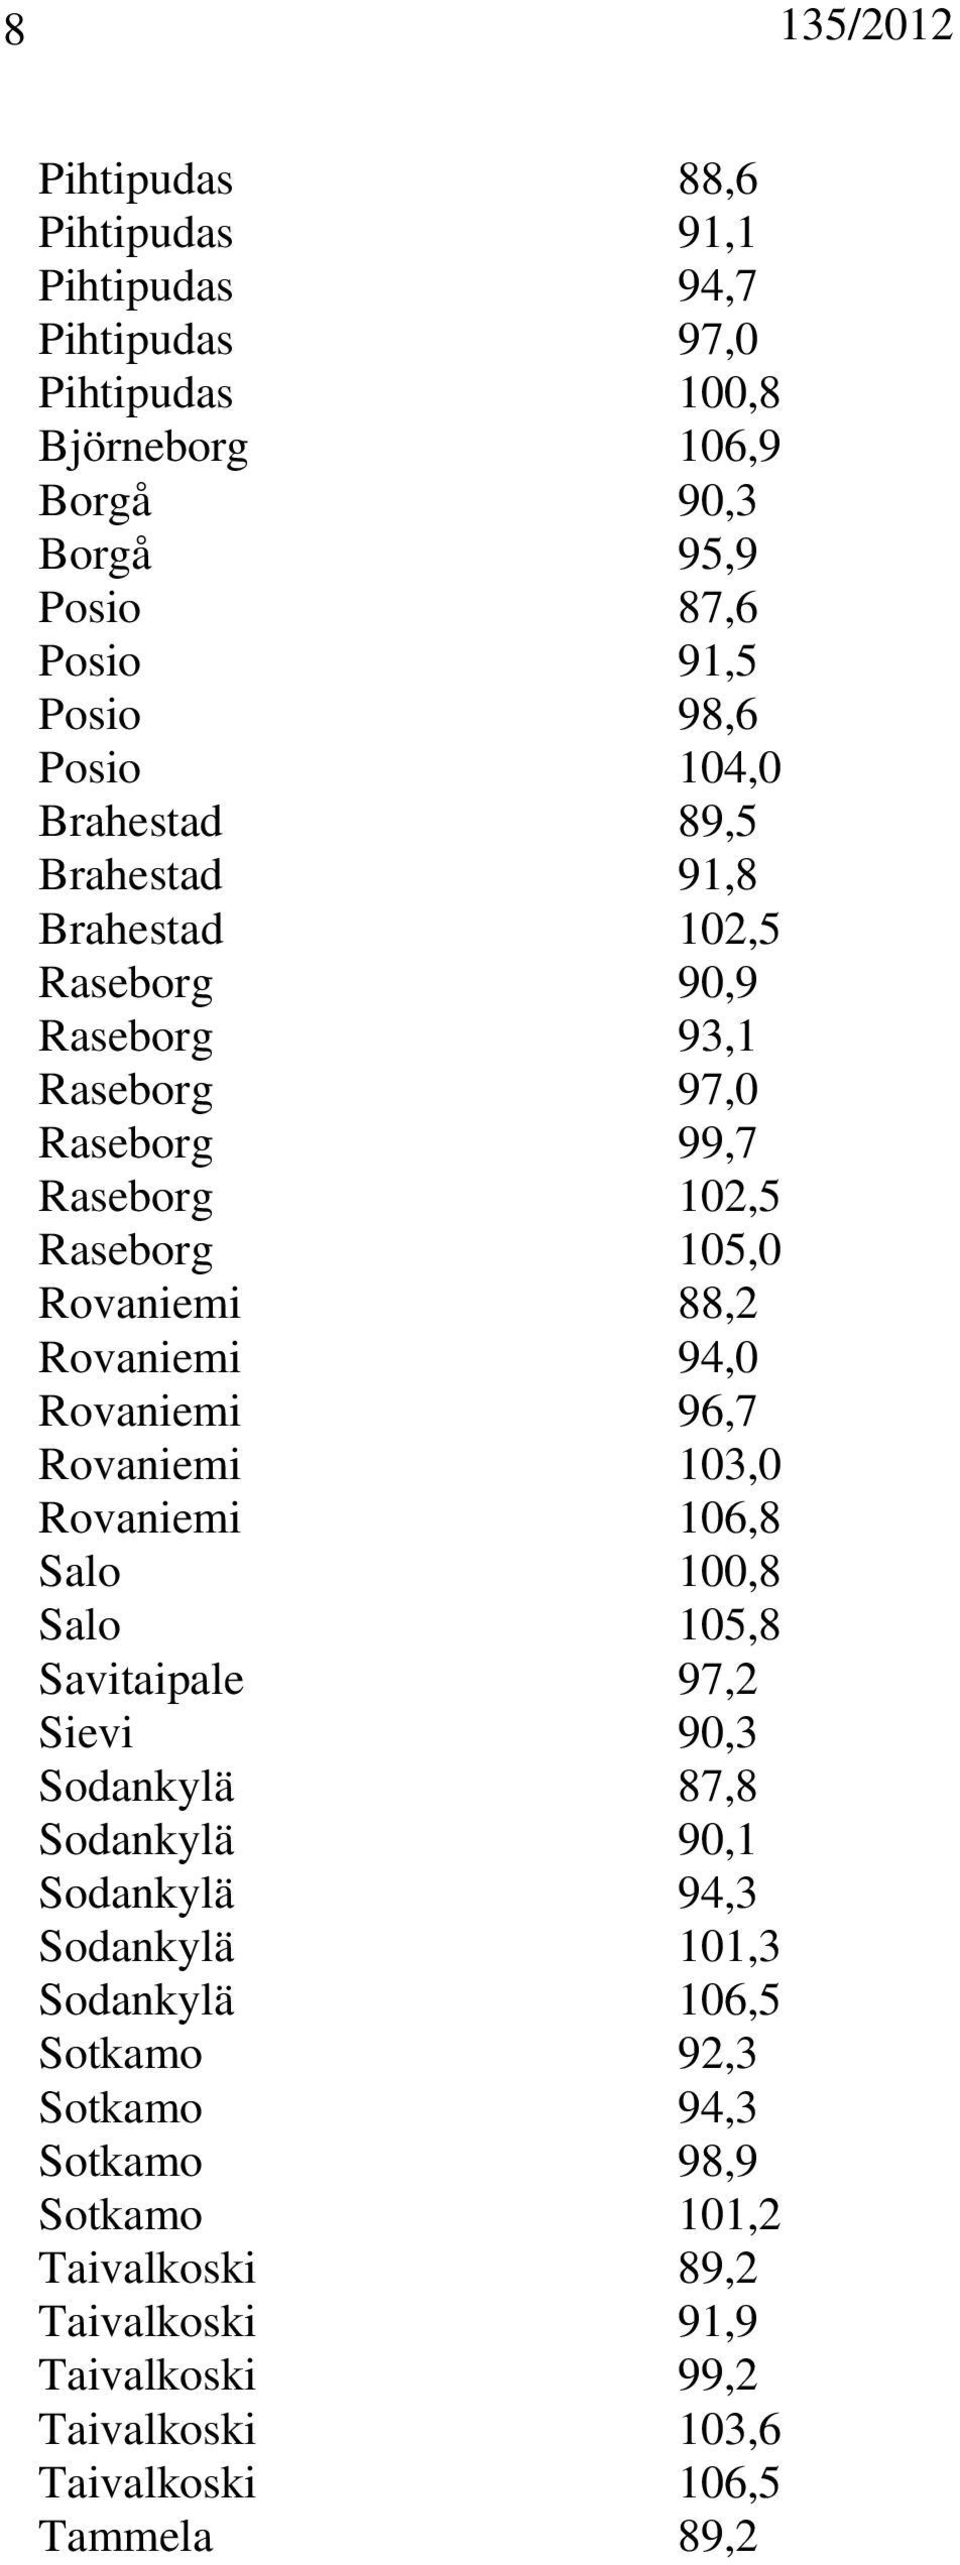 94,0 Rovaniemi 96,7 Rovaniemi 103,0 Rovaniemi 106,8 Salo 100,8 Salo 105,8 Savitaipale 97,2 Sievi 90,3 Sodankylä 87,8 Sodankylä 90,1 Sodankylä 94,3 Sodankylä 101,3